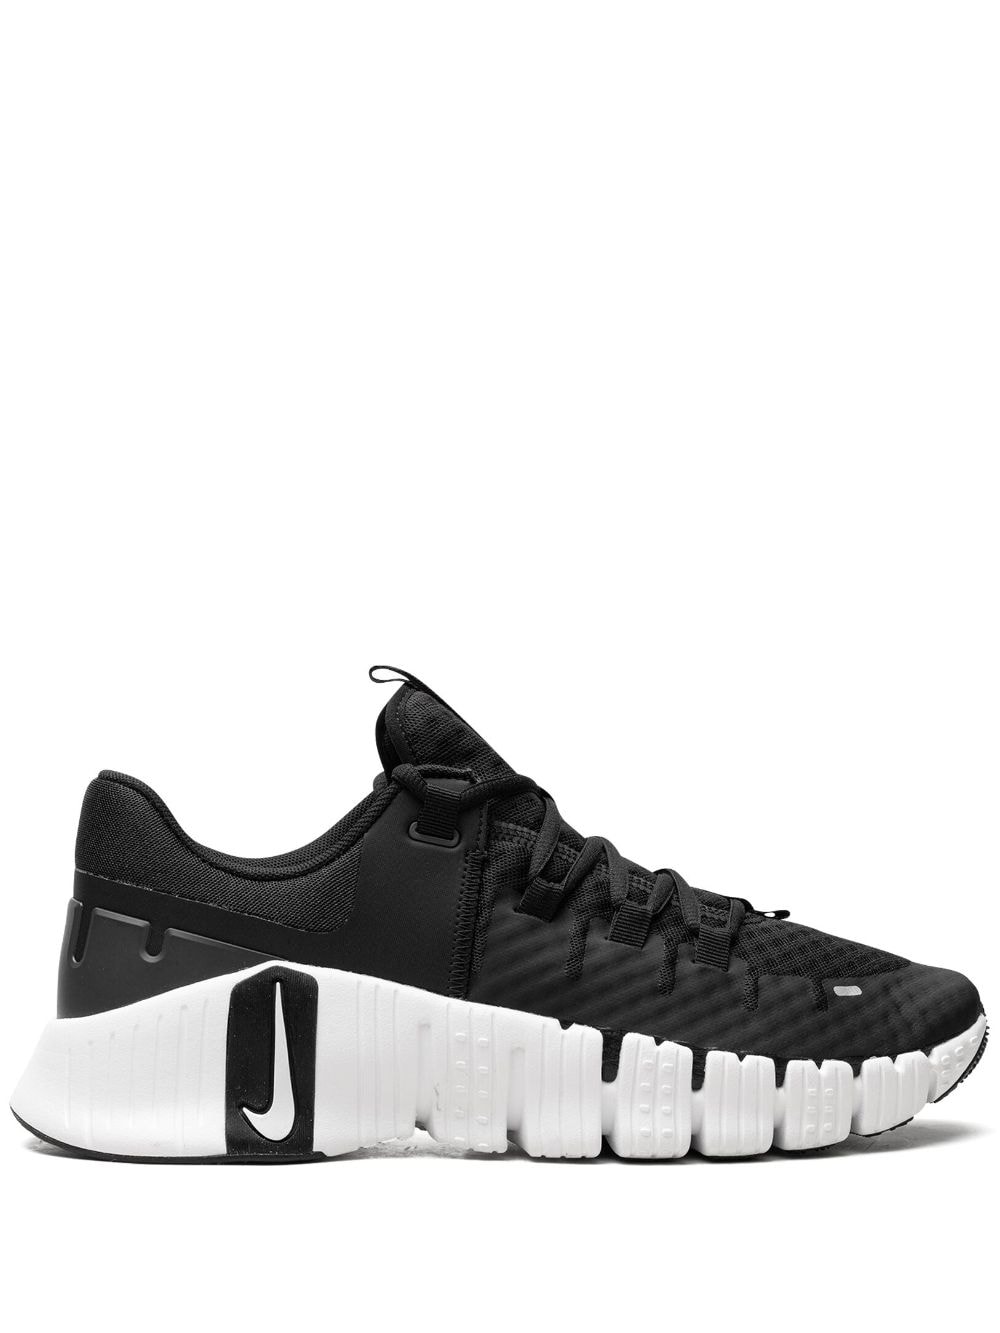 Nike Free Metcon 5 "Black/White" sneakers von Nike